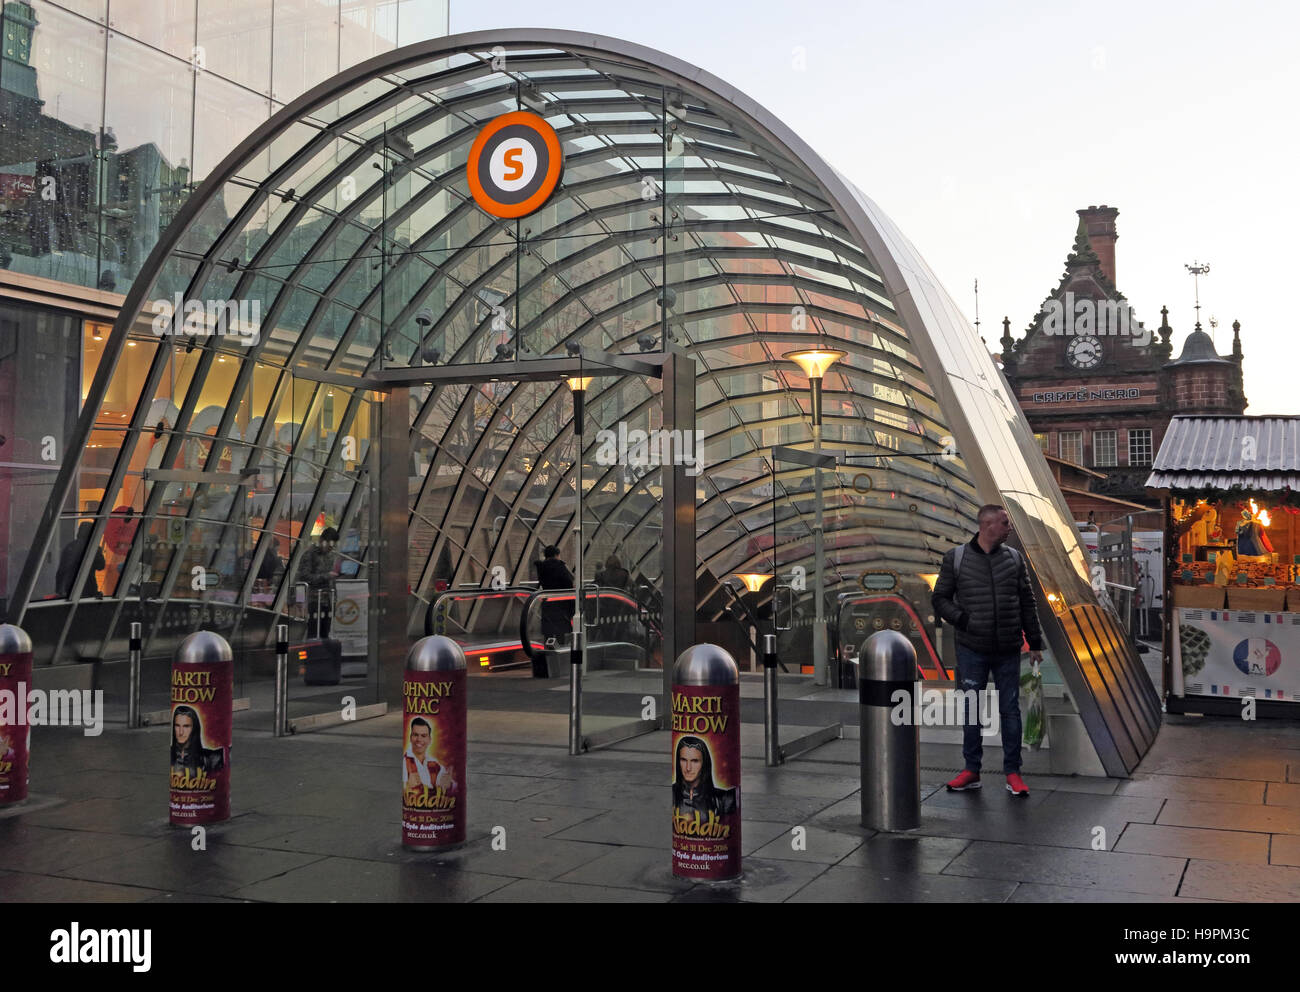 La station de métro St Enoch, Glasgow, Écosse Banque D'Images